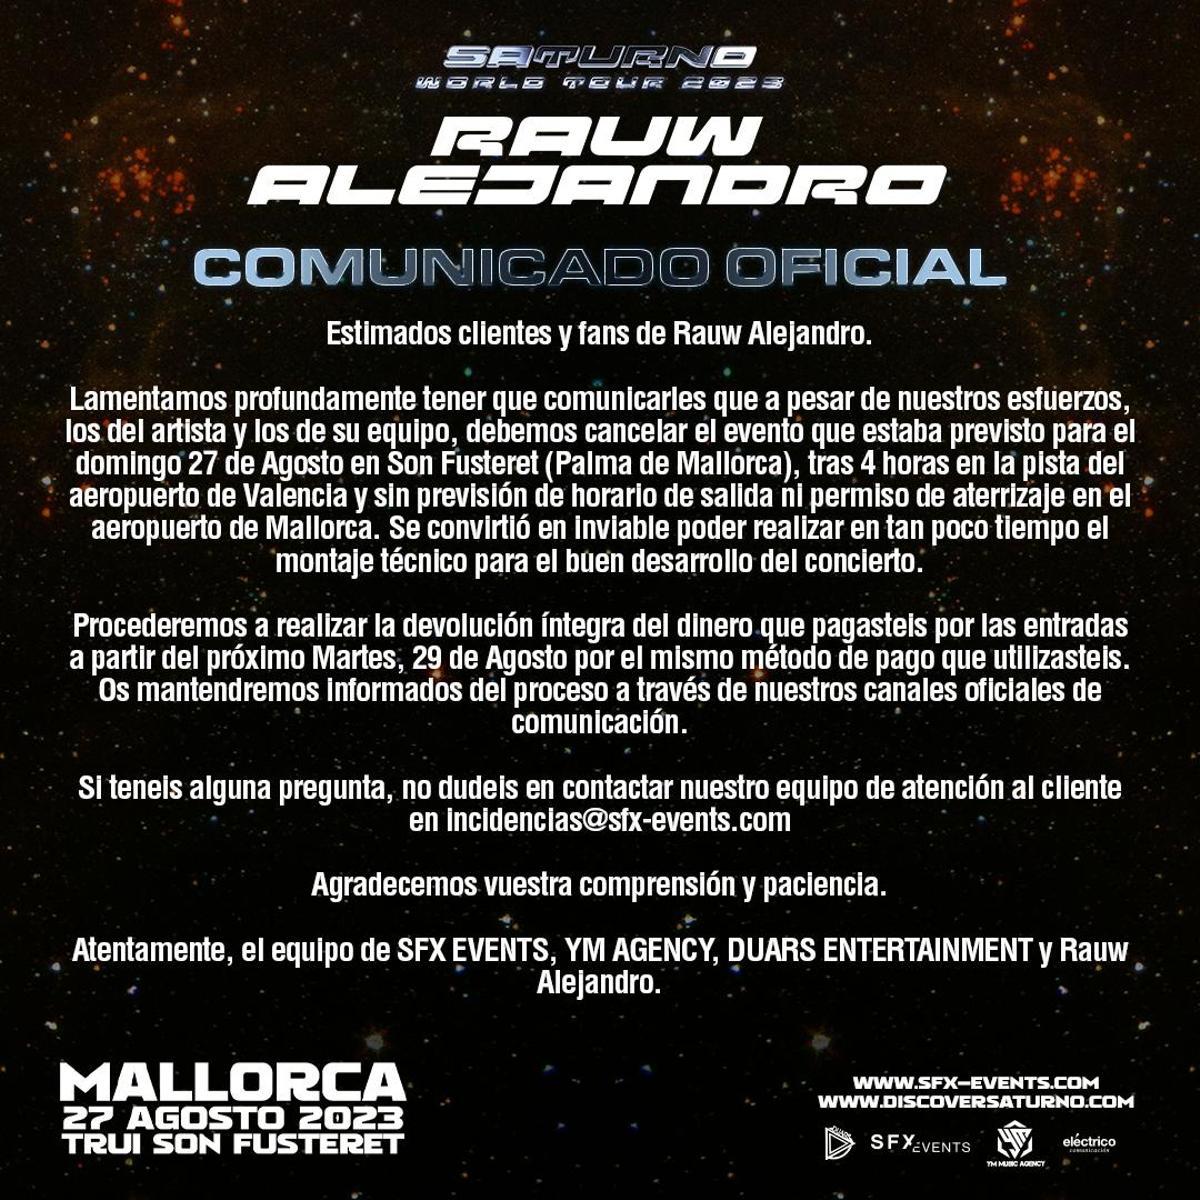 Comunicado oficial sobre el concierto de Rauw Alejandro en Mallorca.